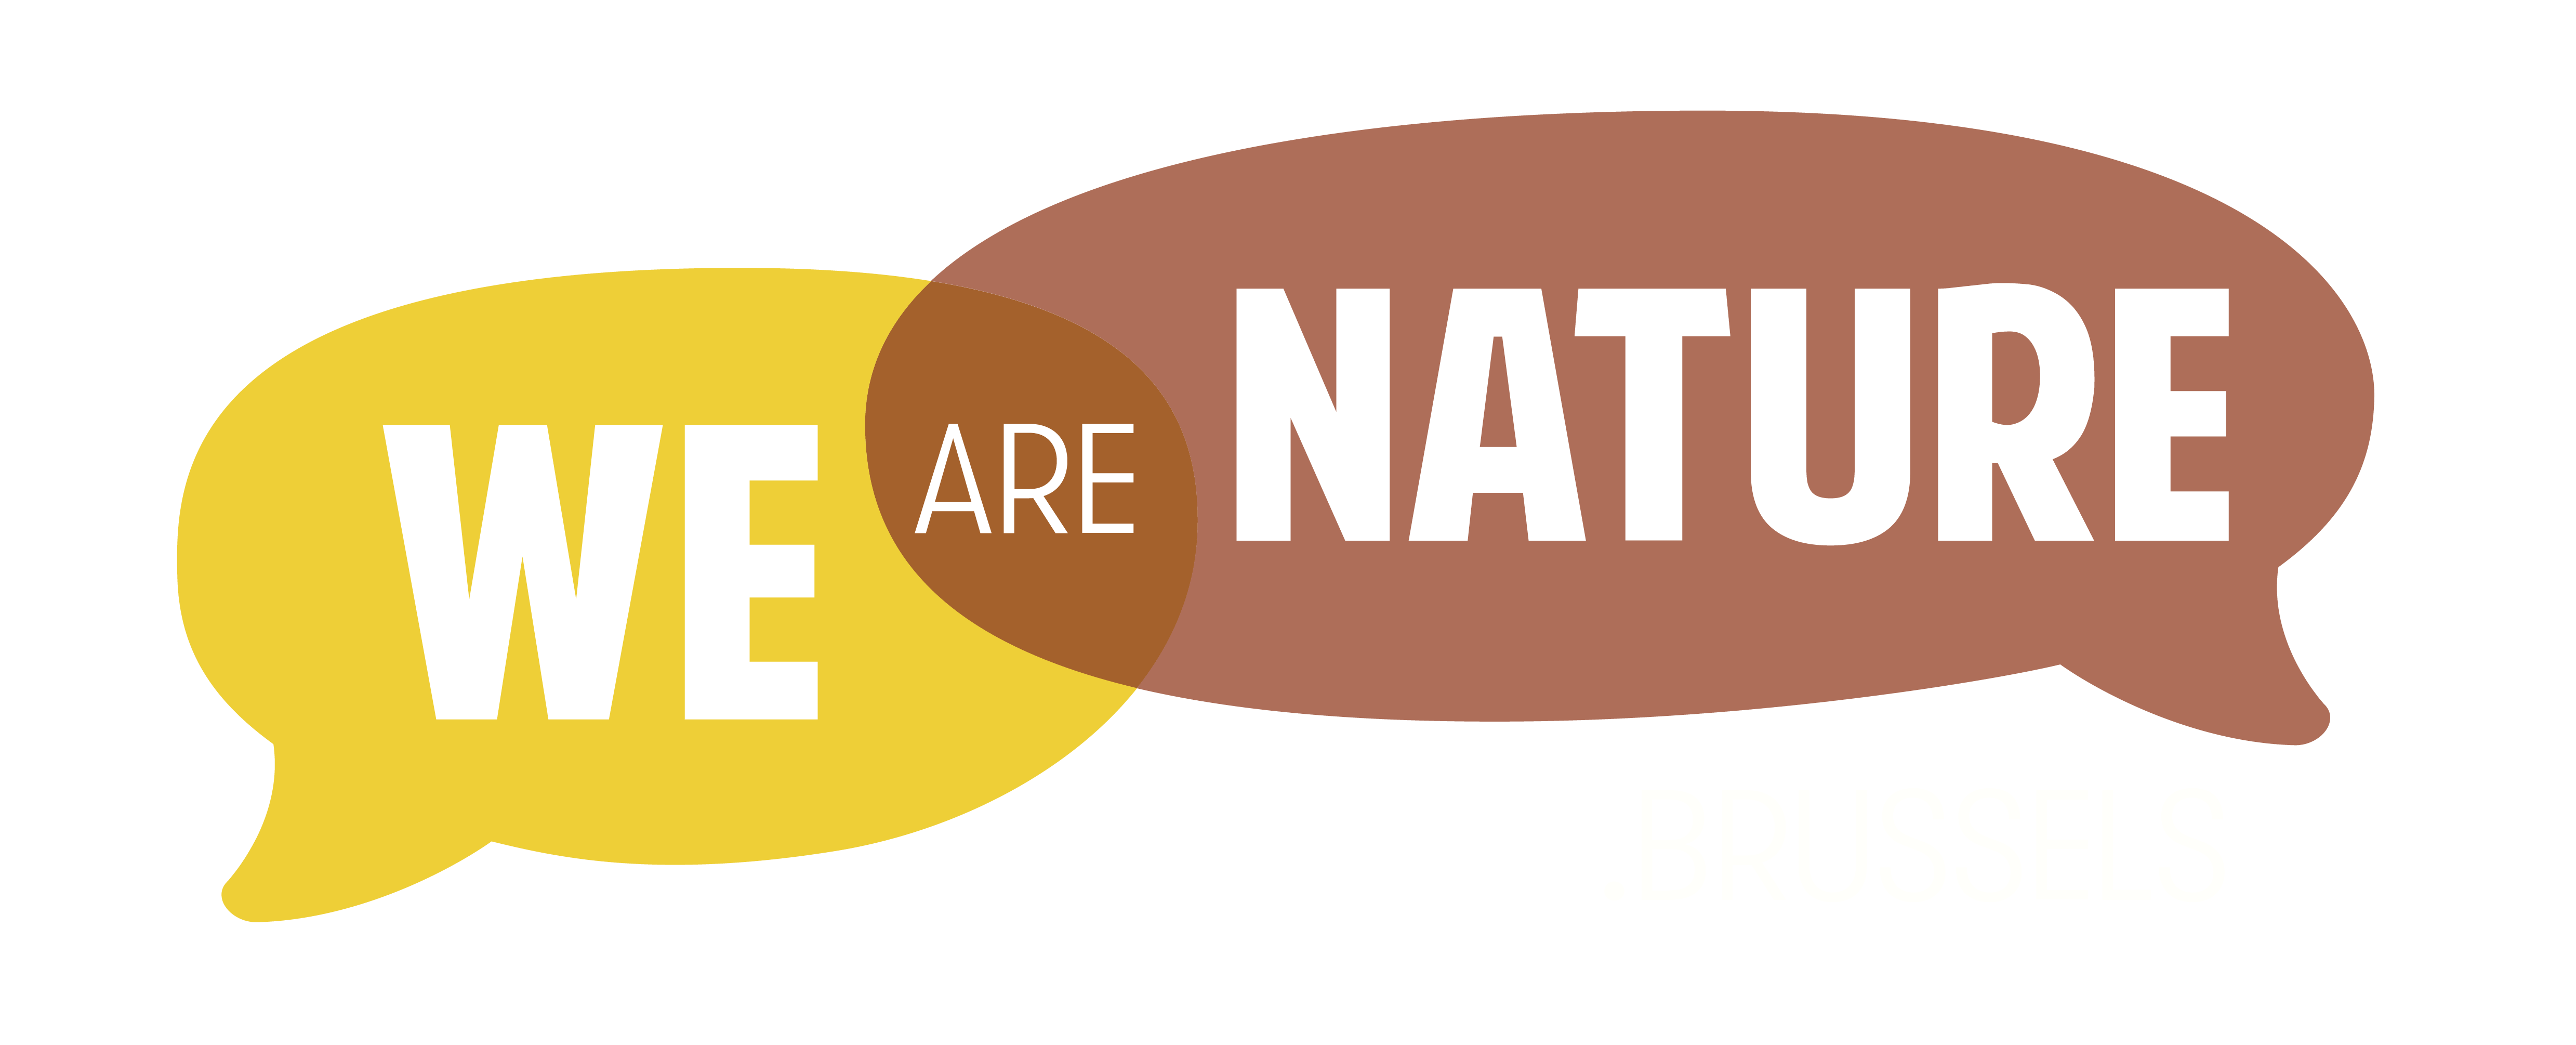 Wij zijn Natuur Brussel